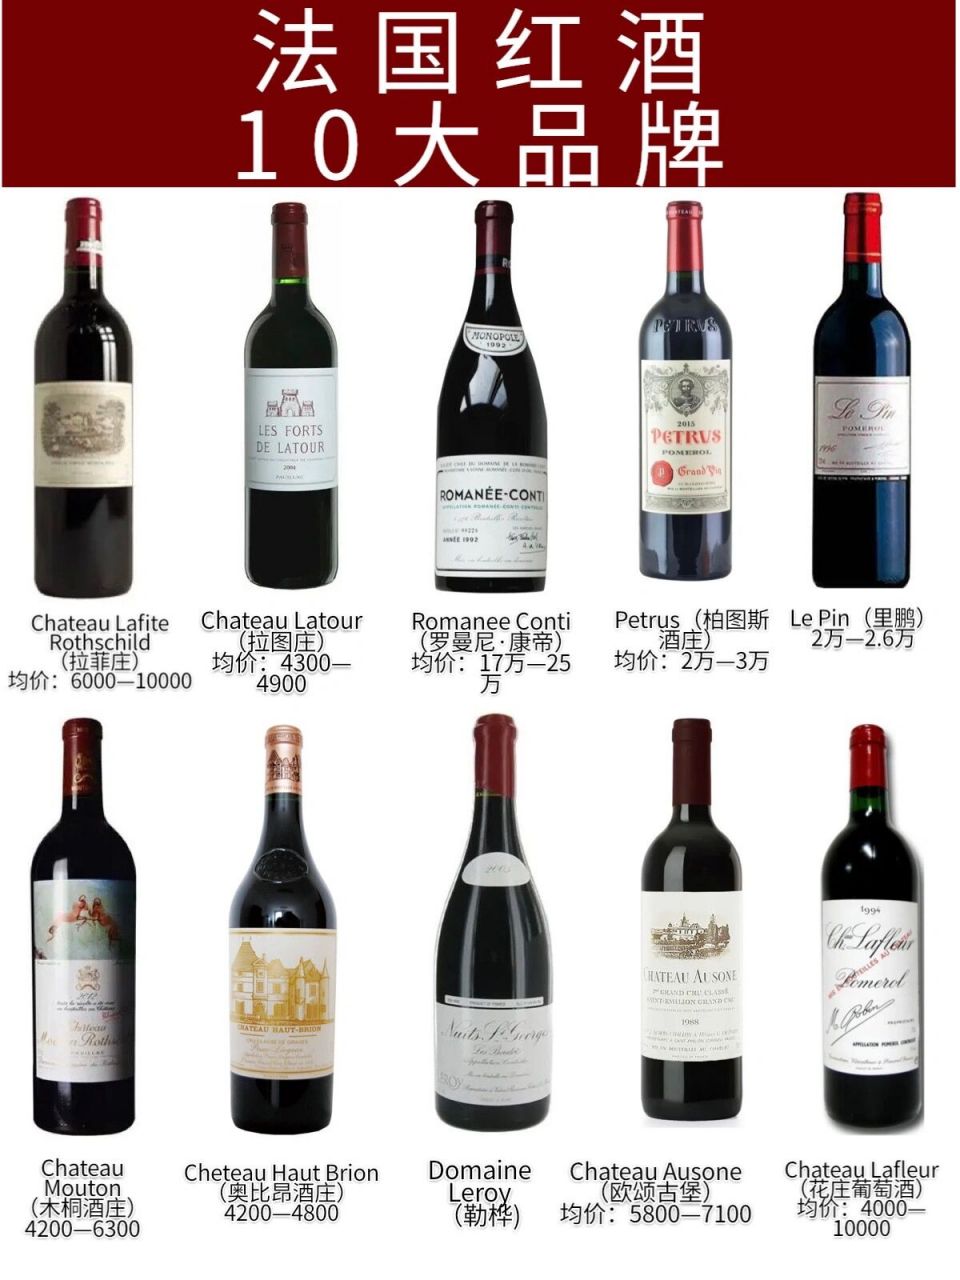 法国红酒商标图案大全图片